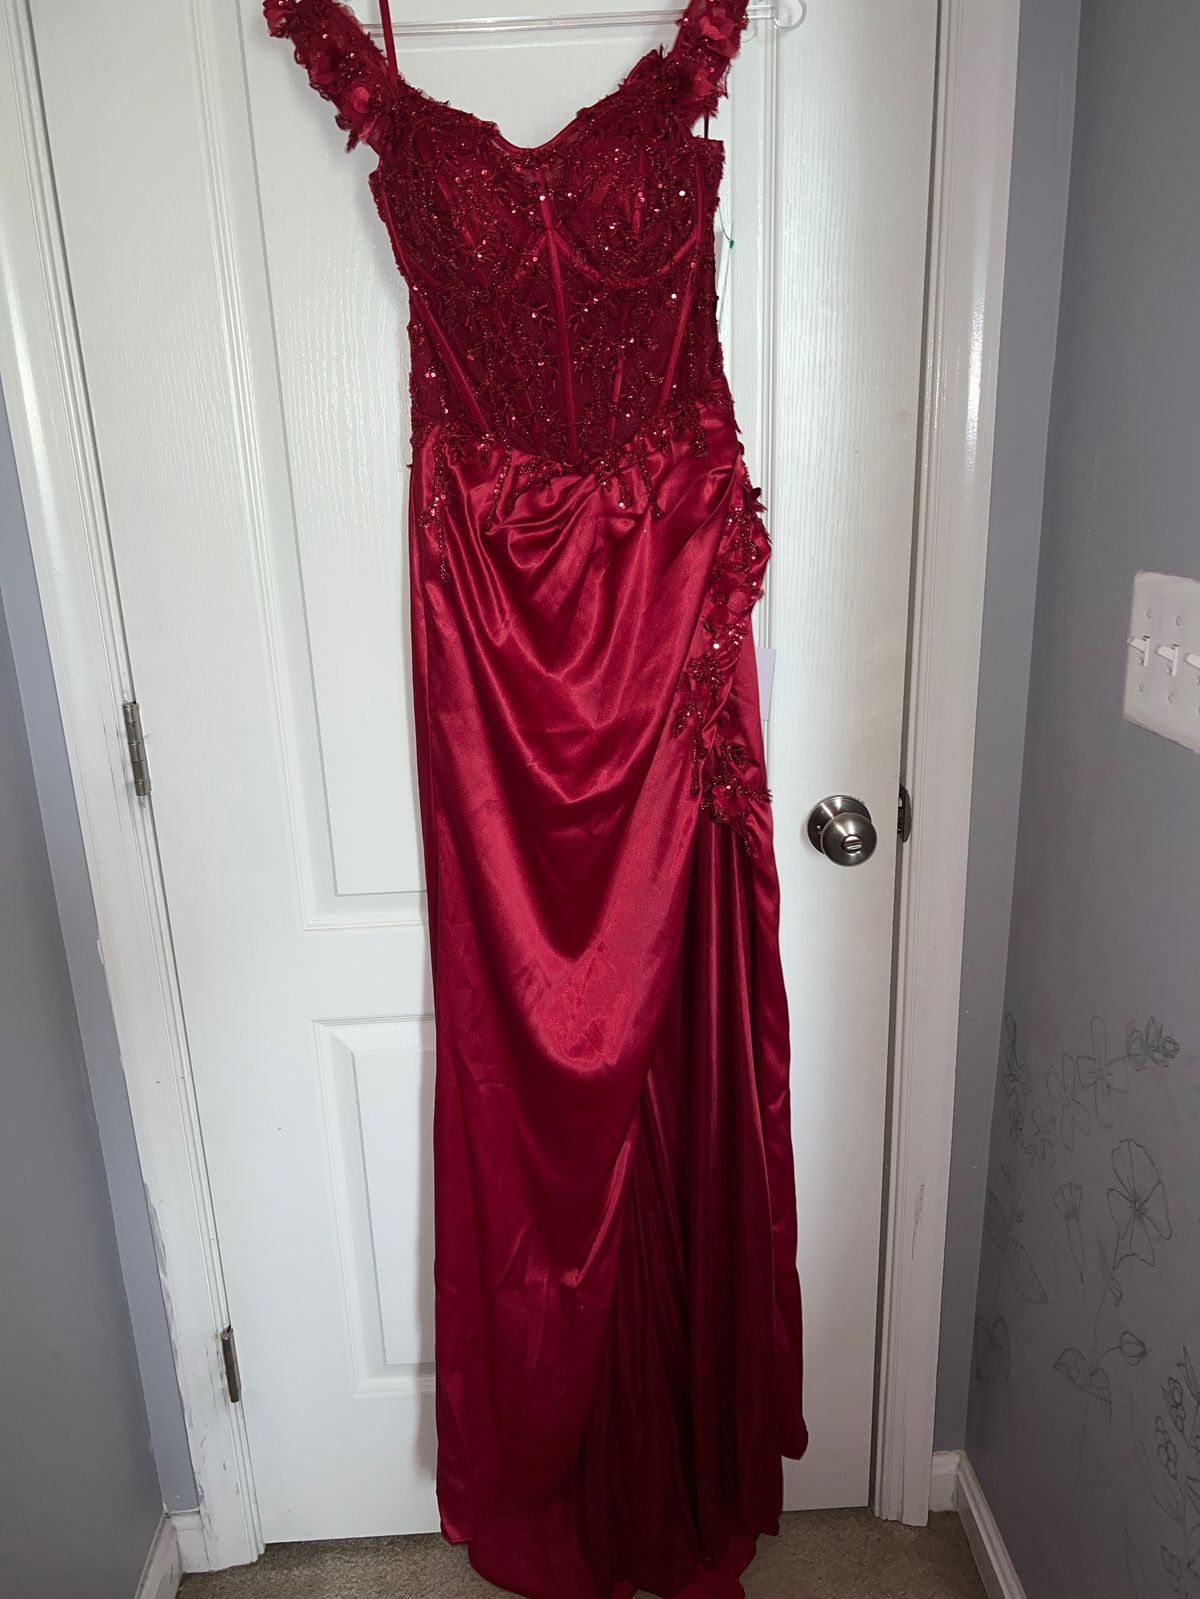 Cinderella Divine Size 8 Prom Off The Shoulder Lace Burgundy Red Side Slit Dress on Queenly